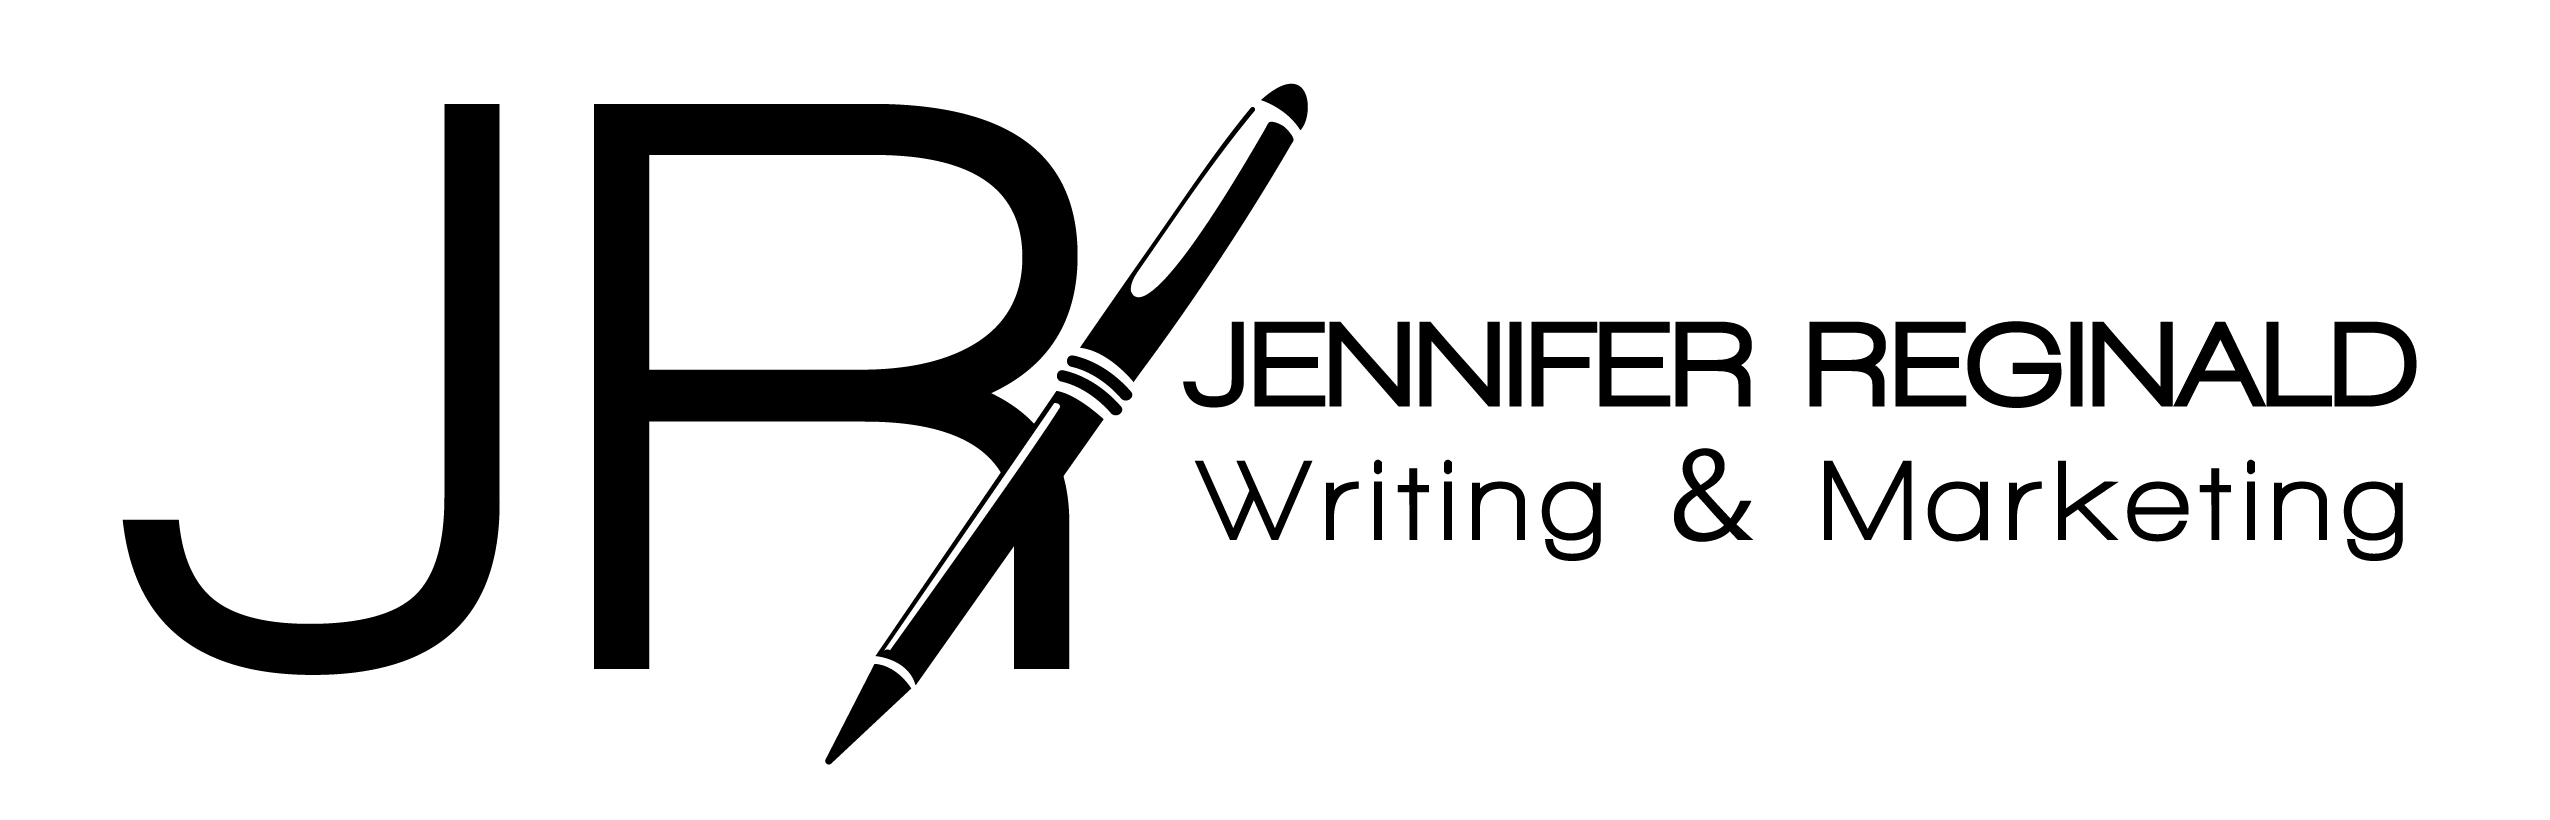 Jennifer Reginald Writing and Marketing